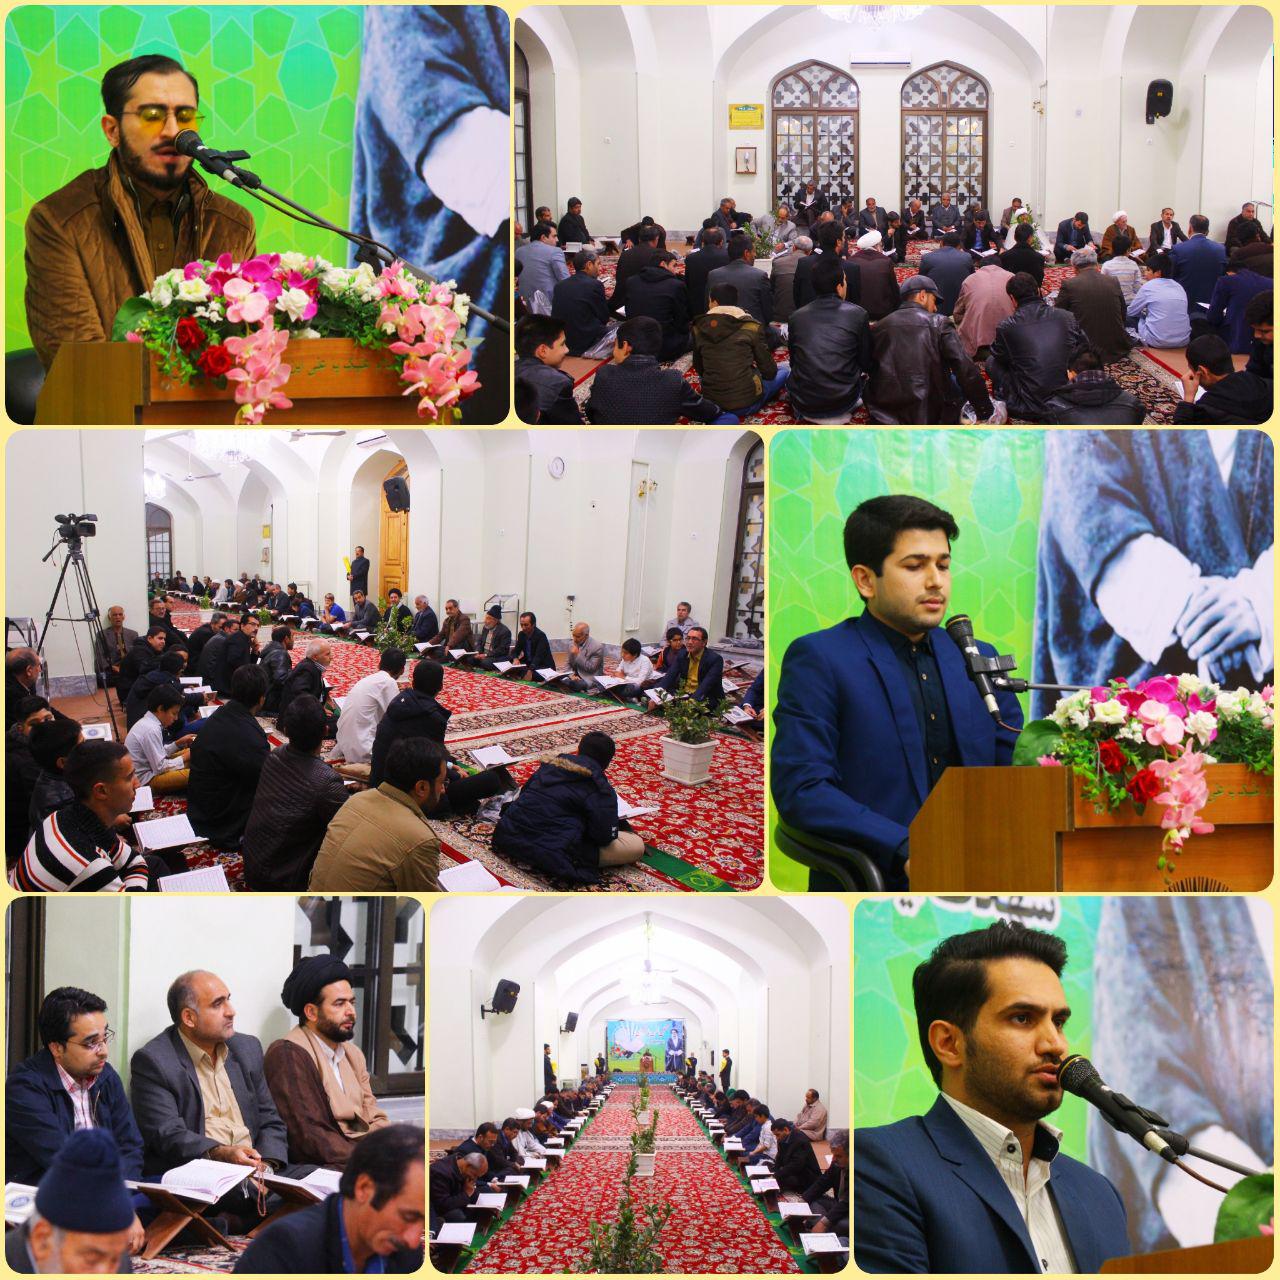 برگزاری محفل انس با قرآن در آستانه سالروز شهادت شهید مدرس/ گزارش تصویری